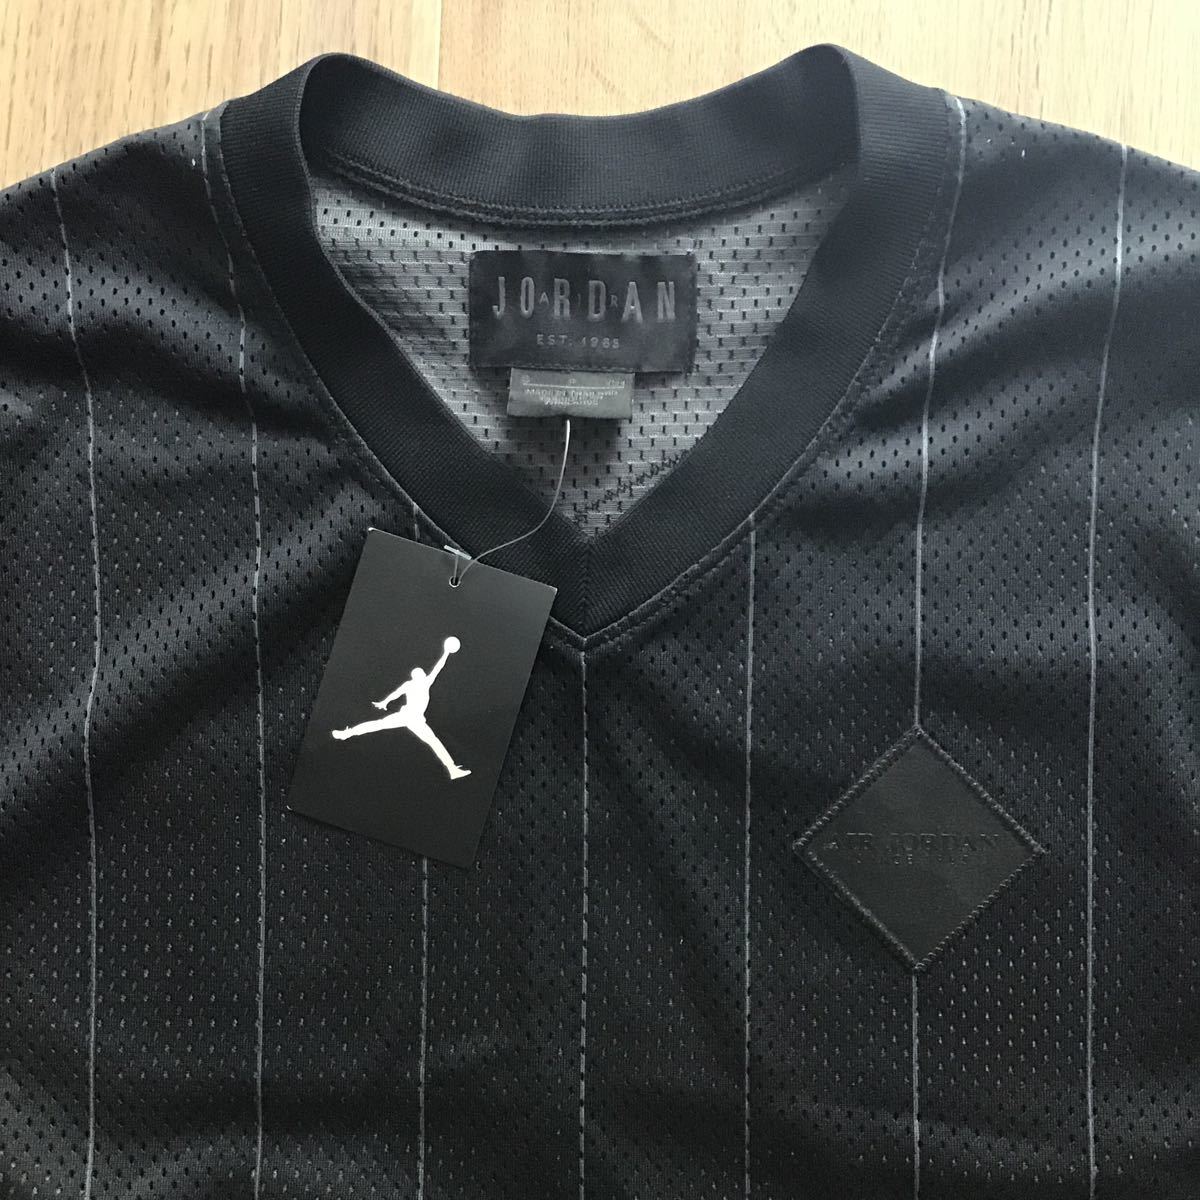 新品未使用品 Jordan baseball shirt Black Sサイズ_画像2